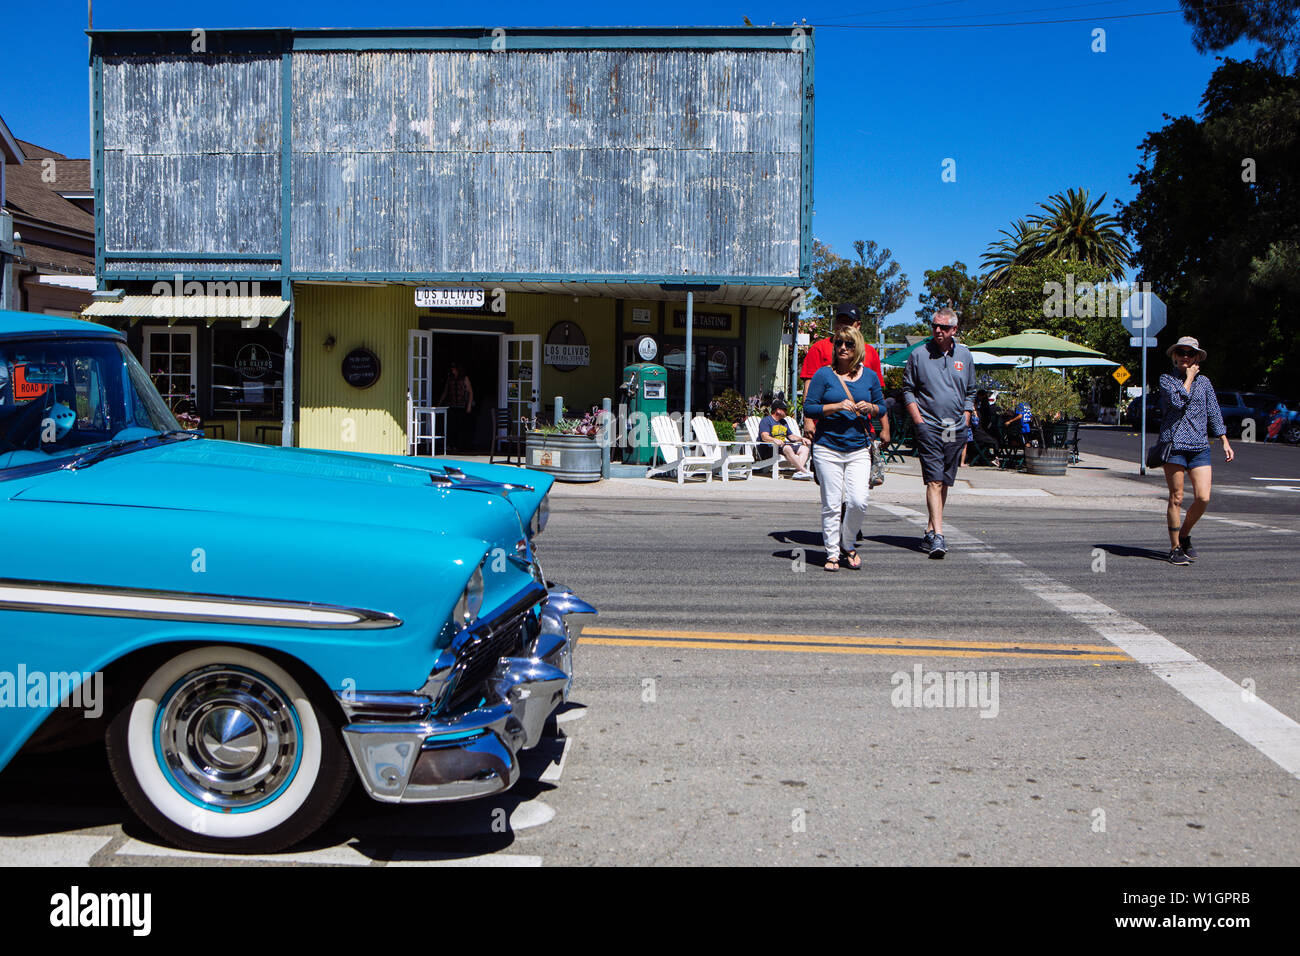 Touristes marchant près d'une voiture antique à Los Olivos General Store, Santa Barbara, Californie, Etats-Unis Banque D'Images